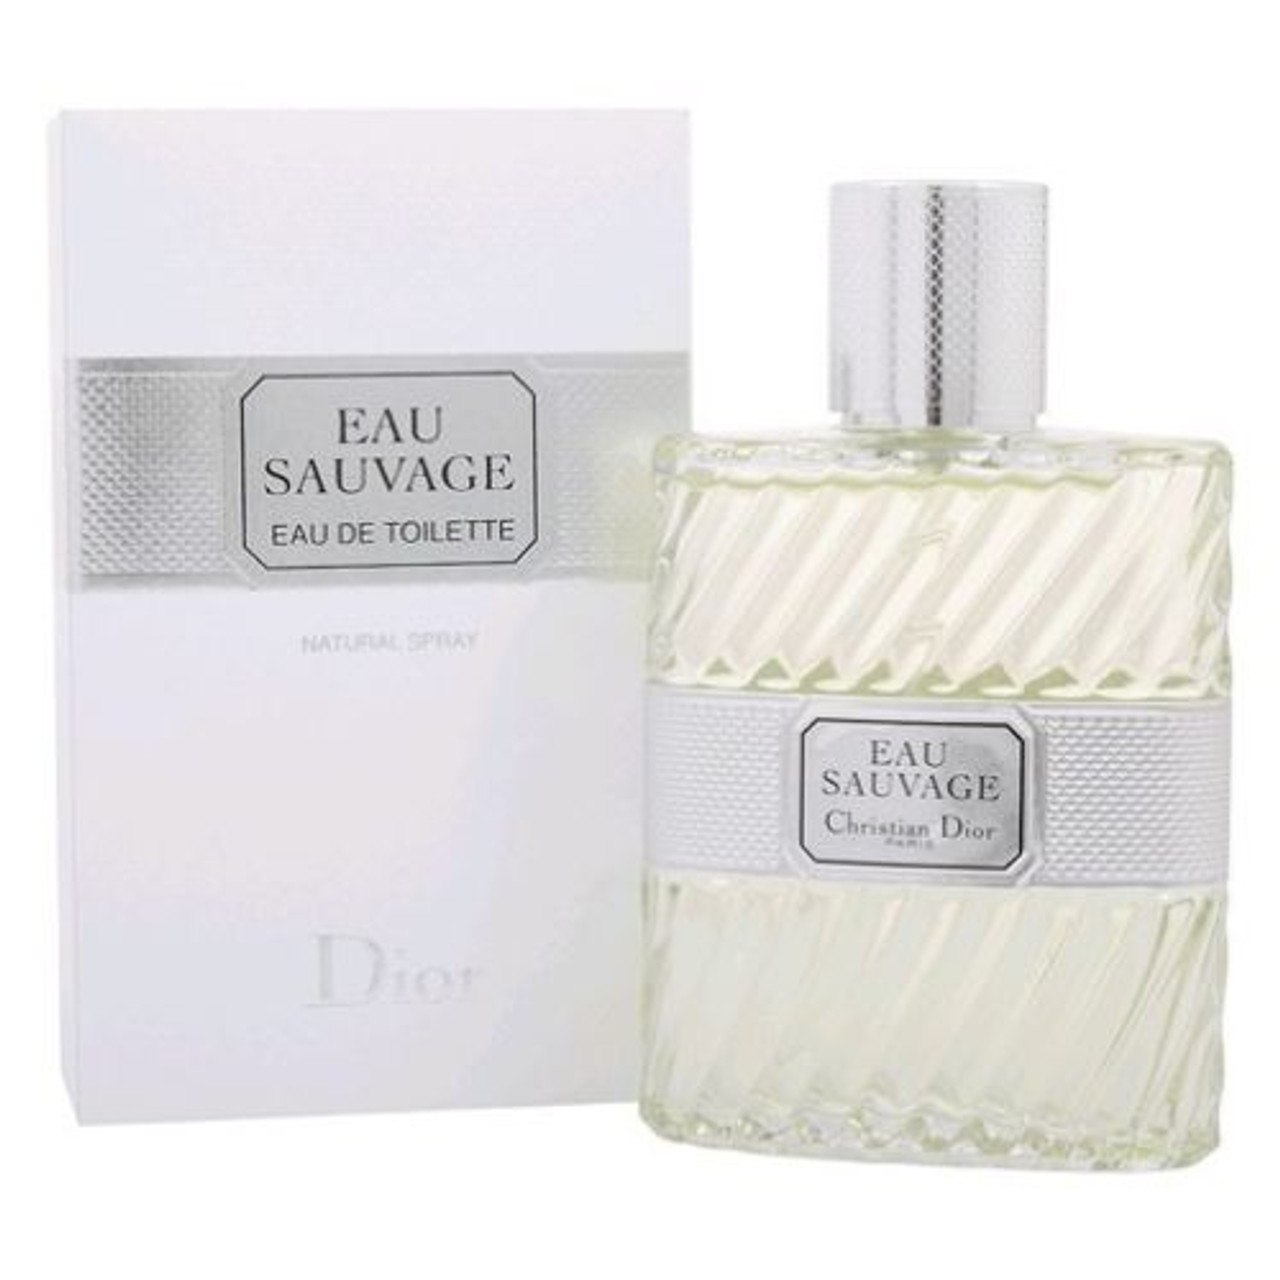 Christian Dior Eau Sauvage Eau de Parfum Spray 100ml/3.4oz